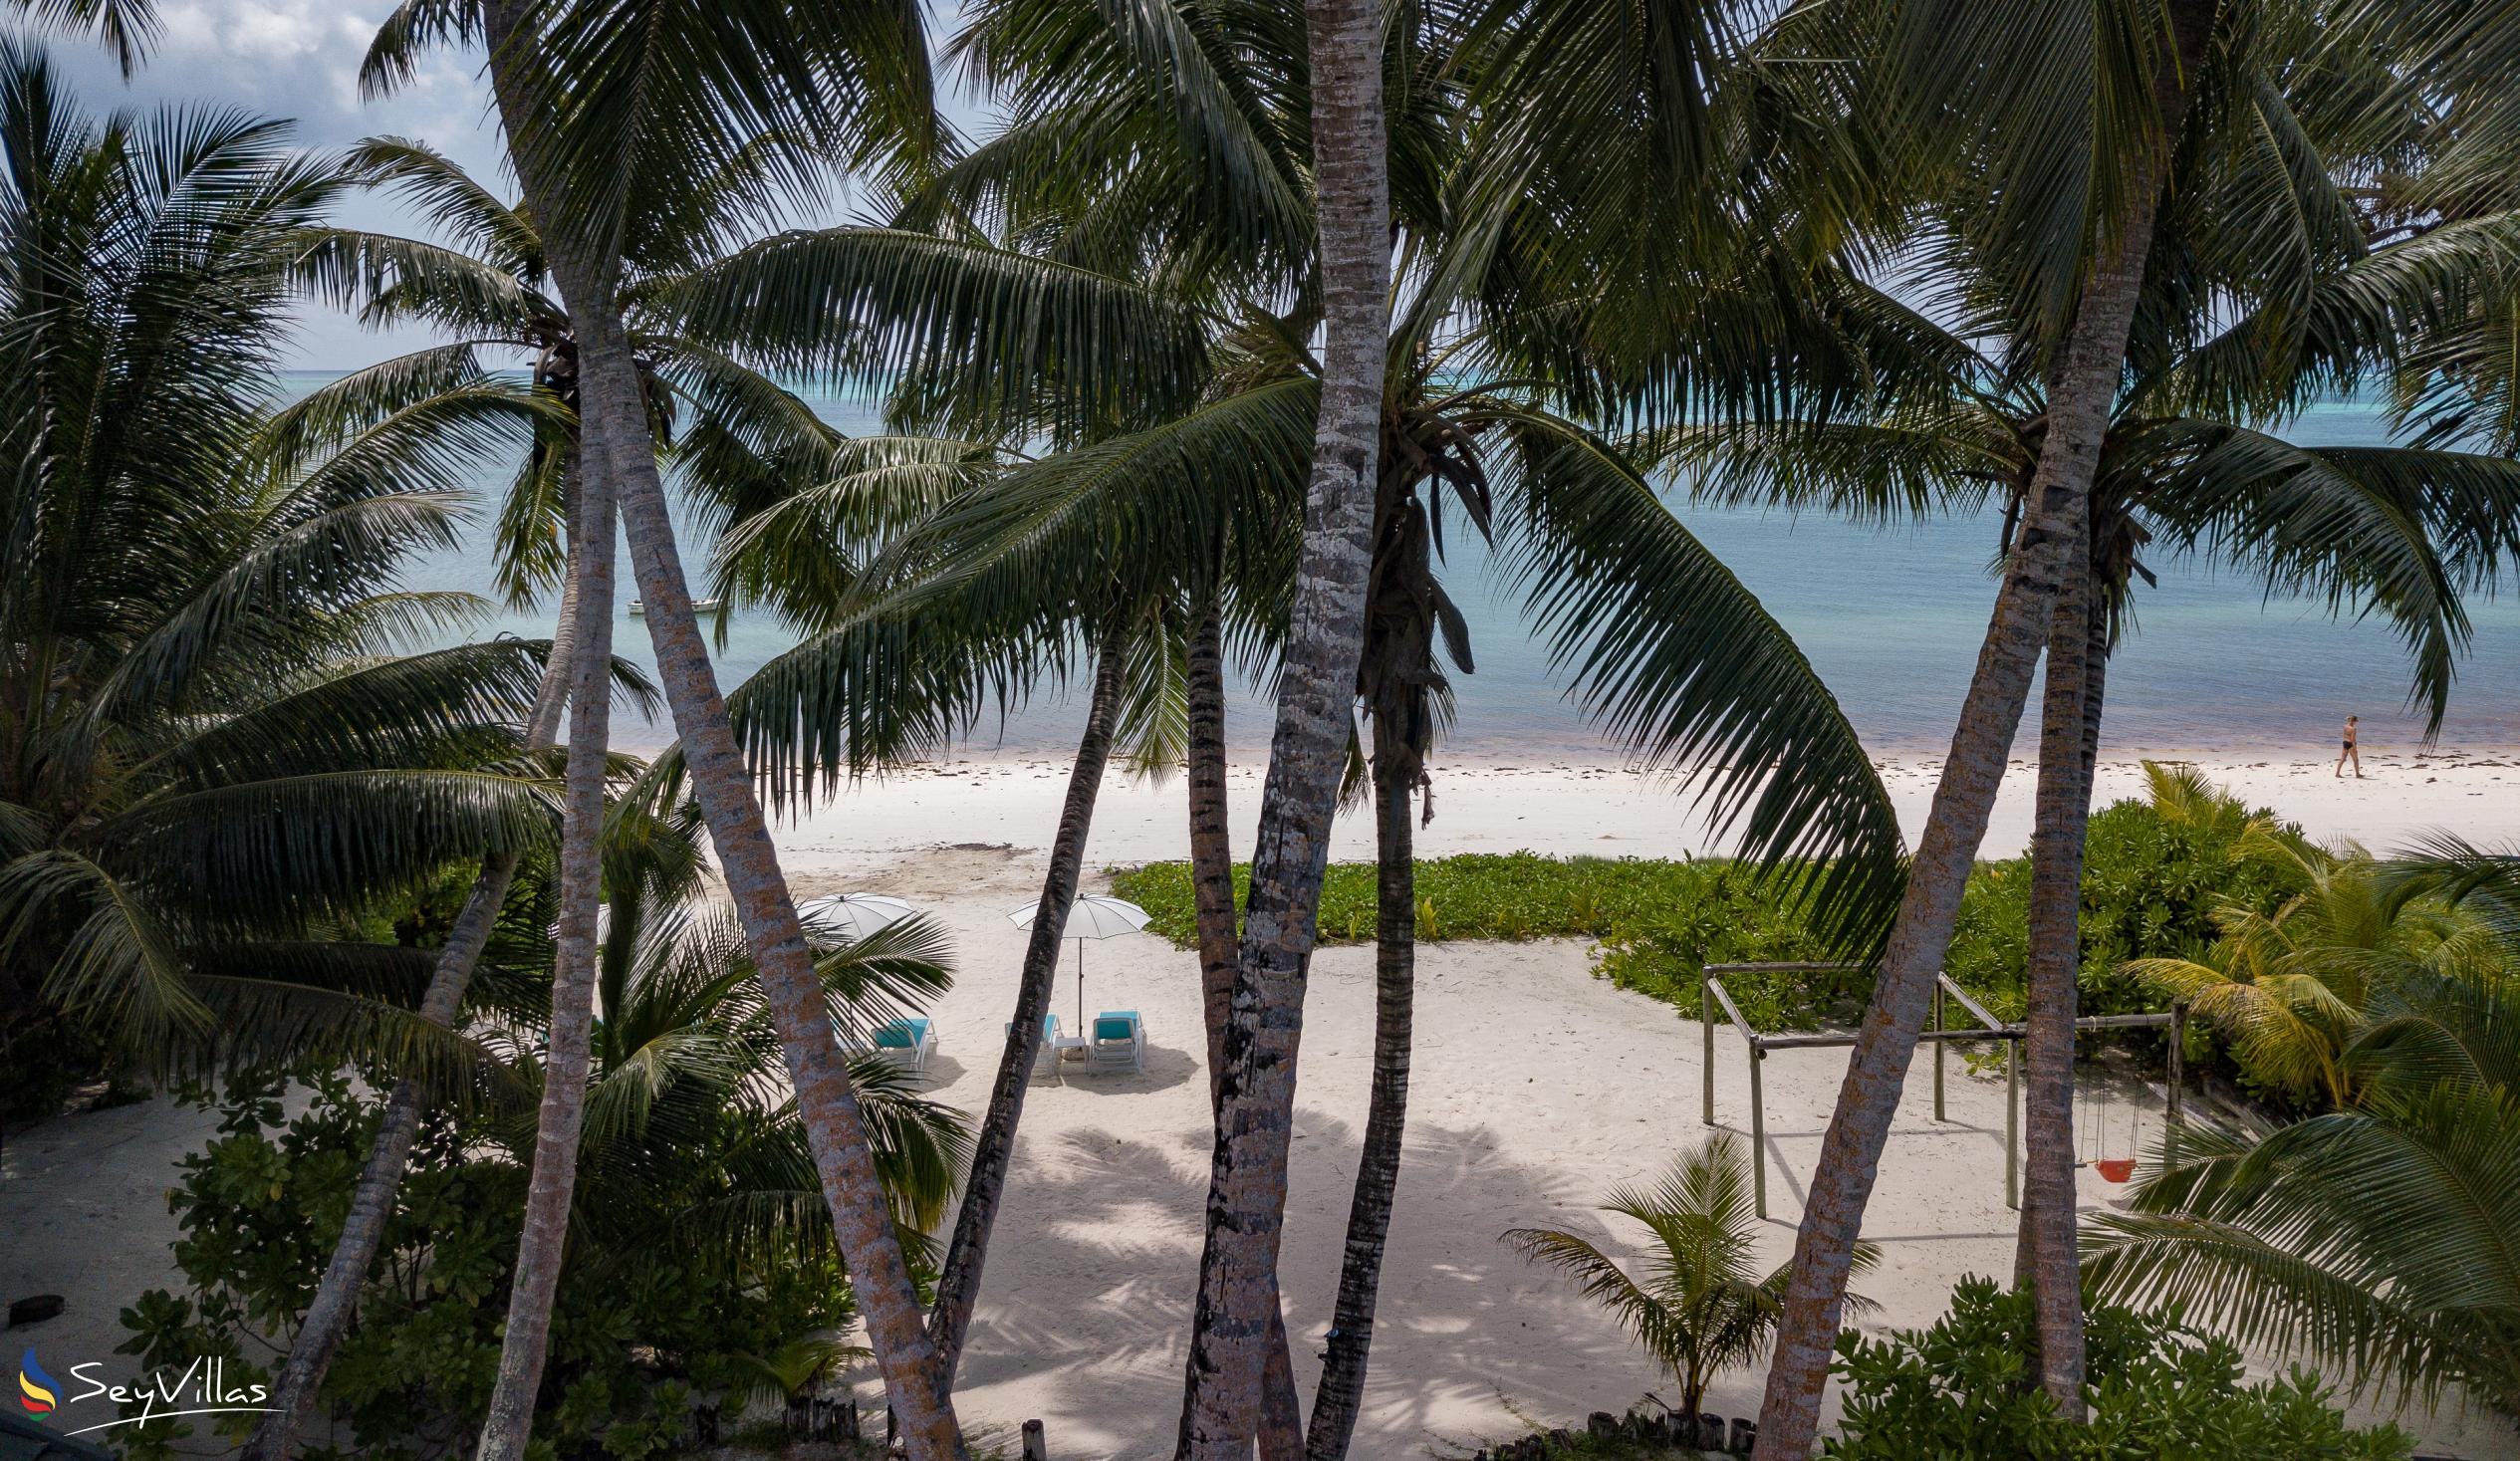 Foto 9: Ocean Jewels - Aussenbereich - Praslin (Seychellen)